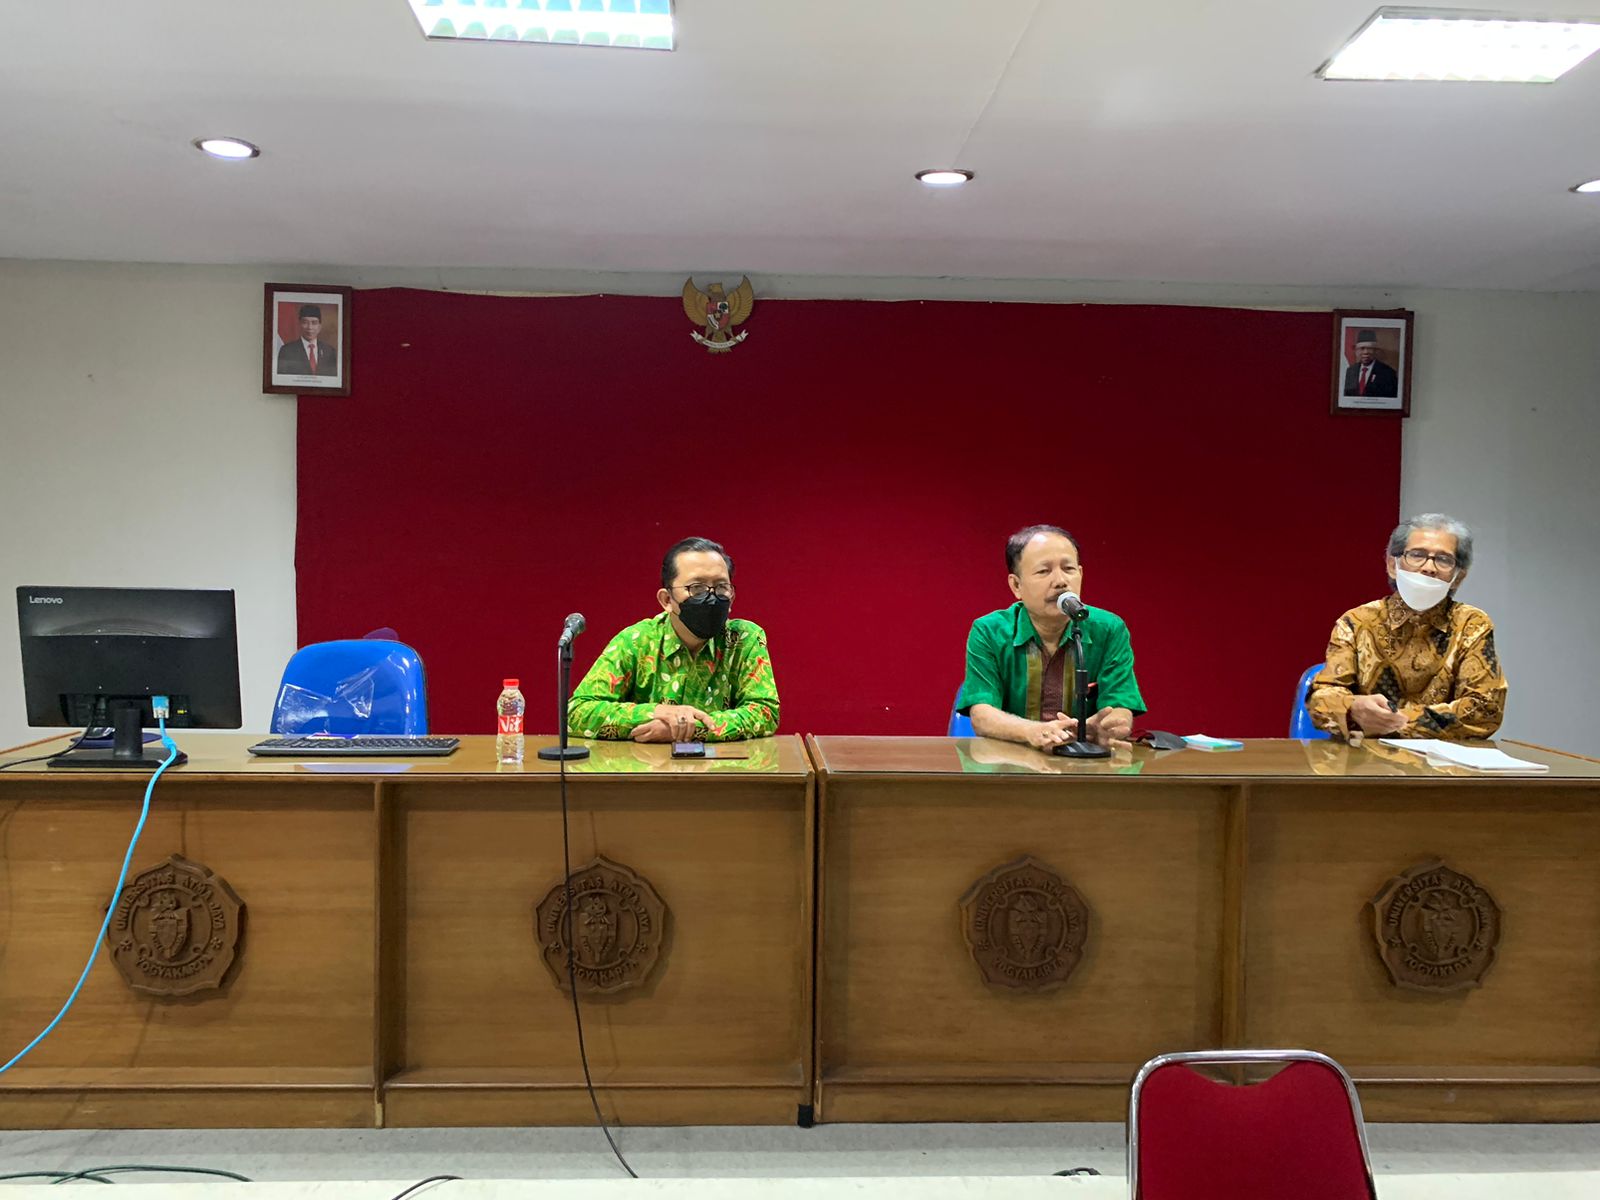 Ketua Pengadilan Negeri Yogyakarta Mengikuti Kegiatan Pengenalan Profesi Sengketa Alternatif (ADR) bersama Universitas Atma Jaya Yogyakarta